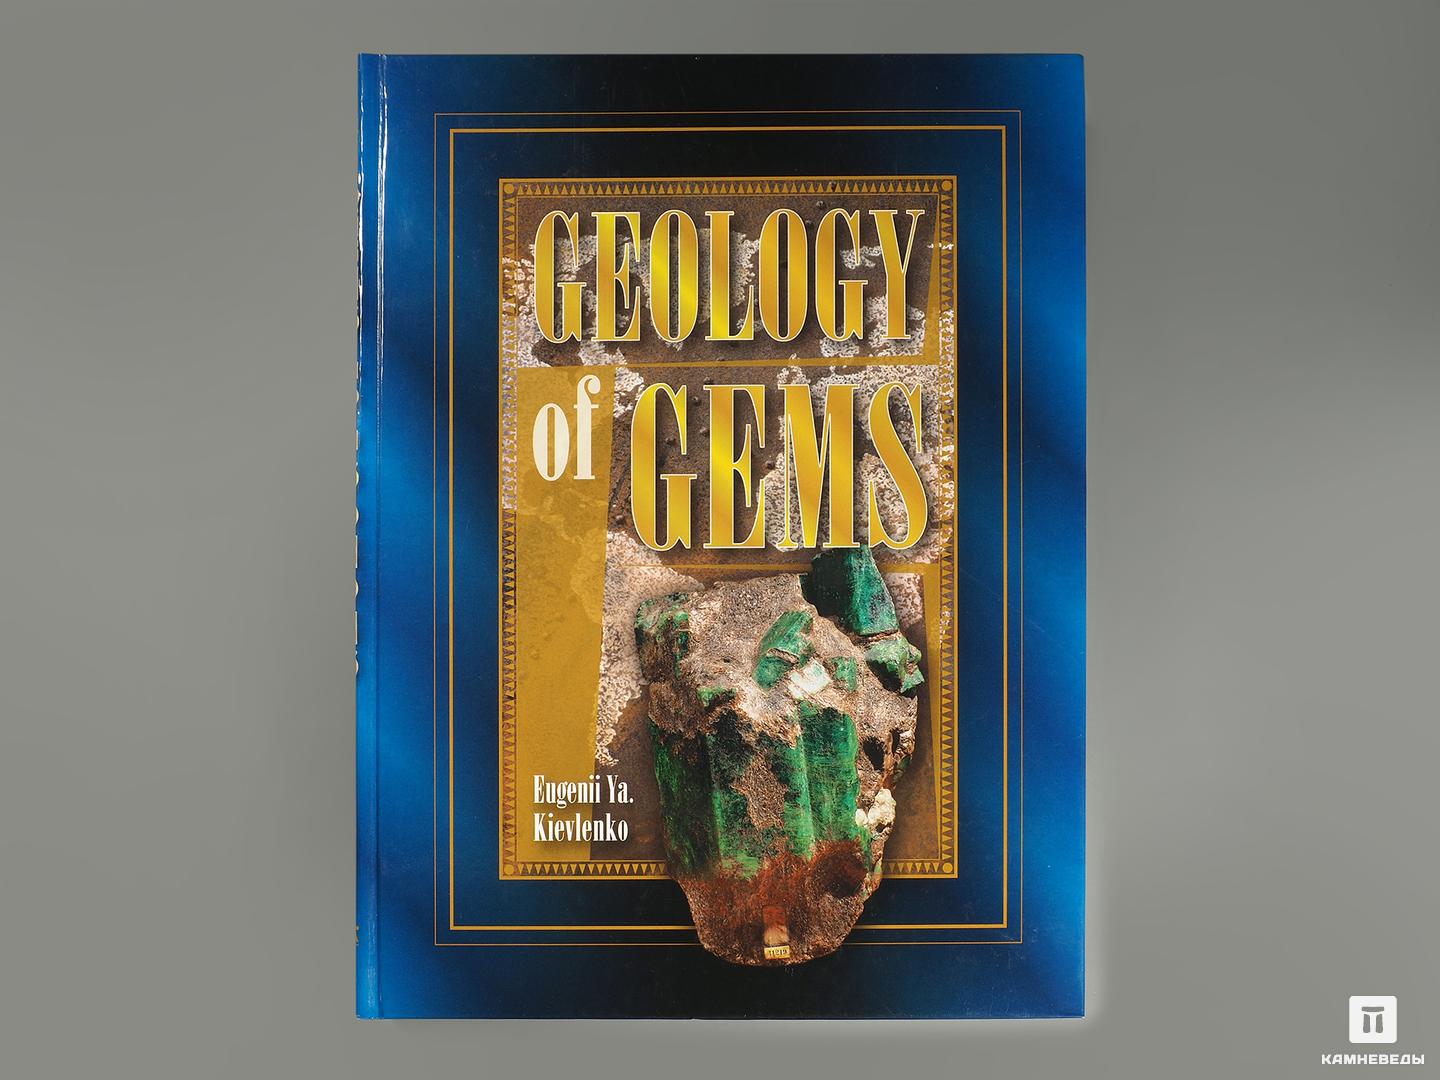 Книга: Eugenii Ya. Kievlenko «Geology of gems» басни билингва fables bilingua русская классика на английском языке